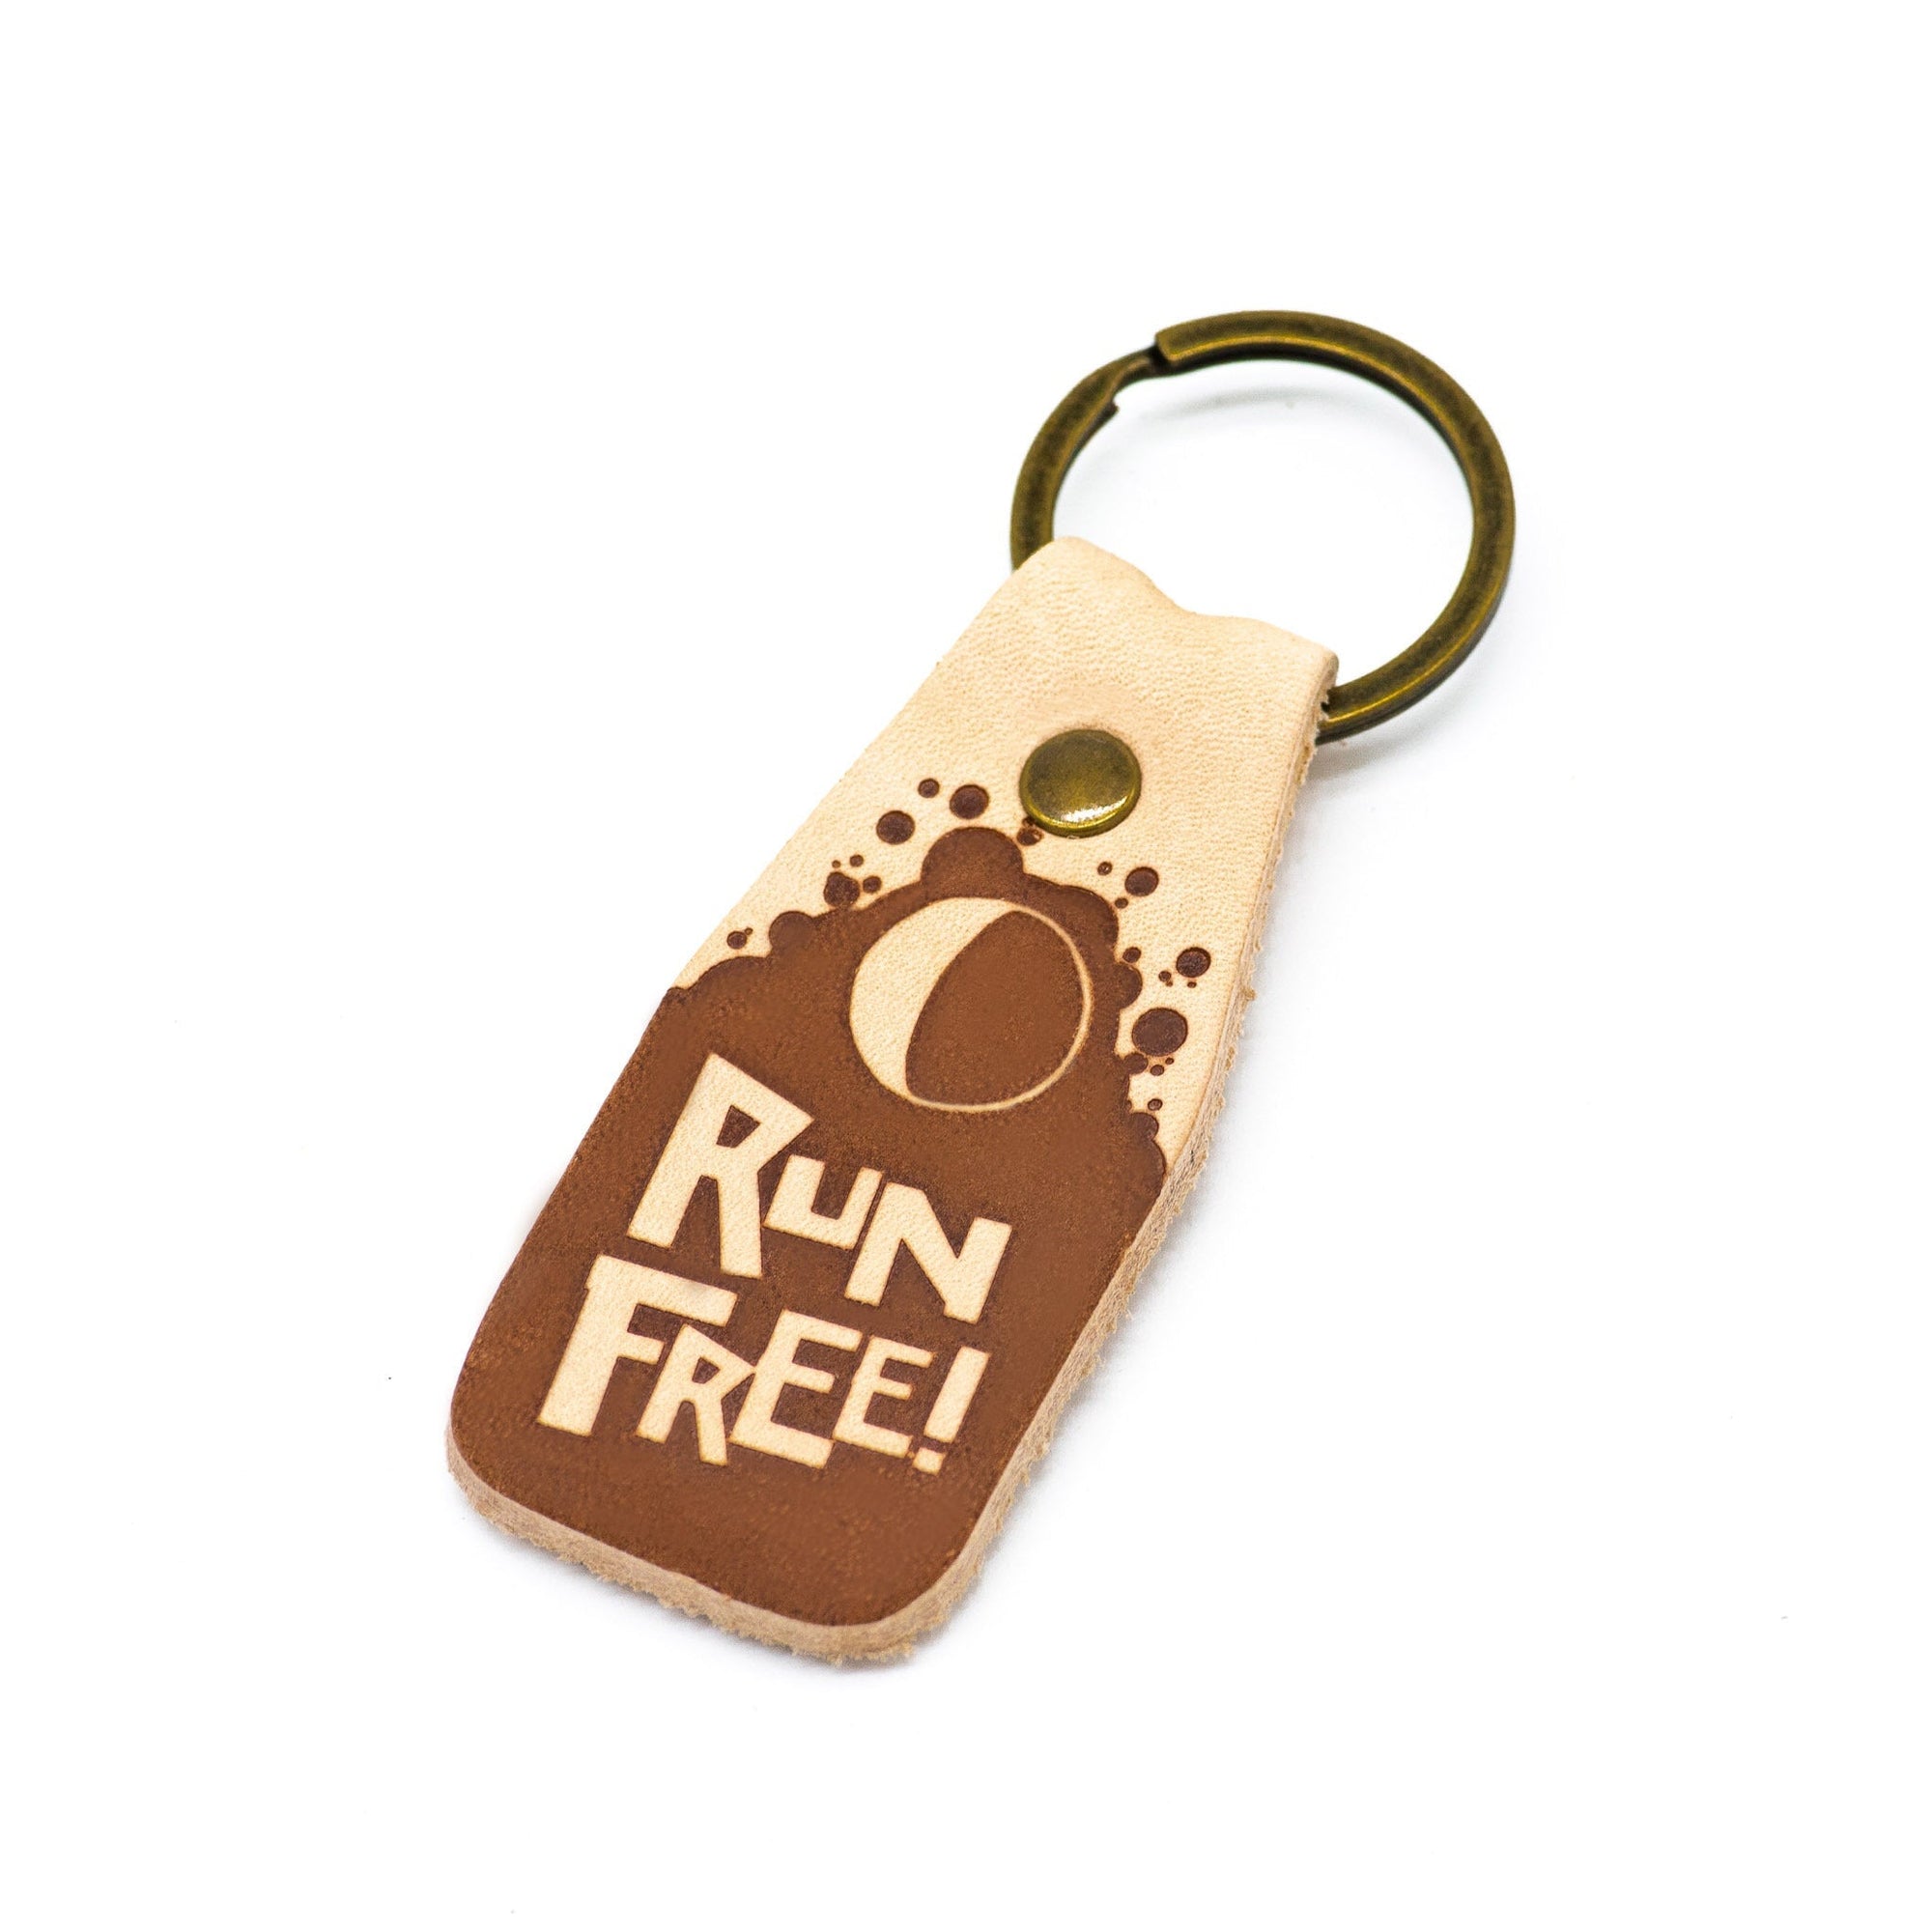 "RUN FREE!" Keychains - LUNA Sandals